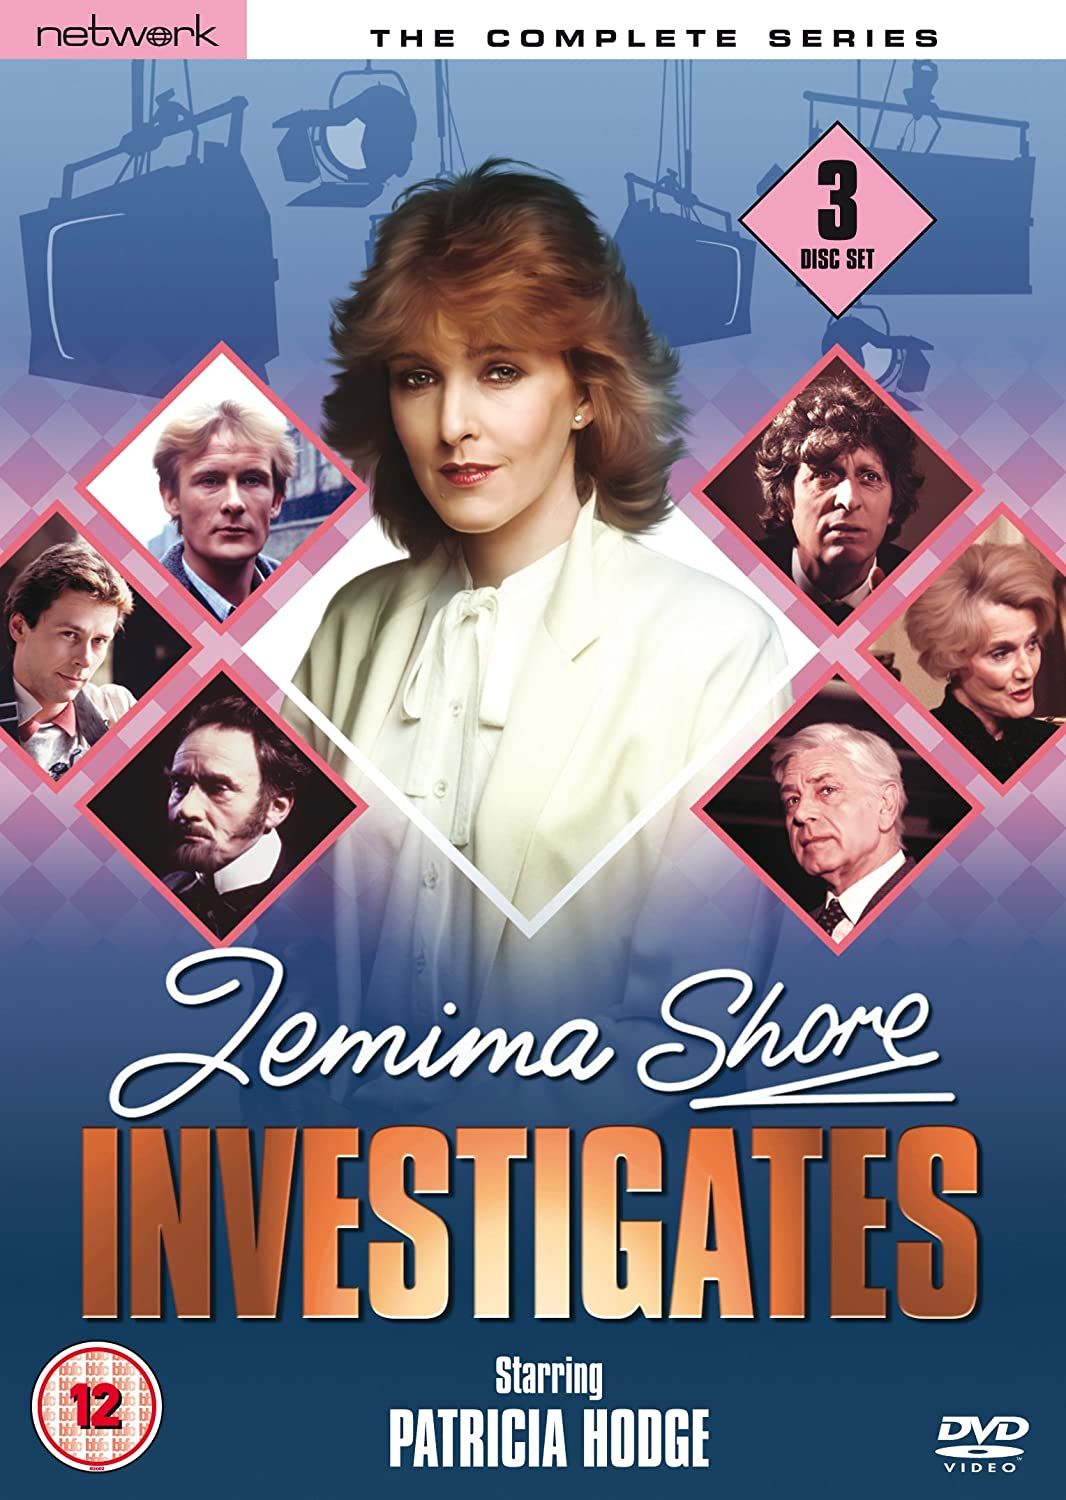 Jemima Shore Investigates ne zaman